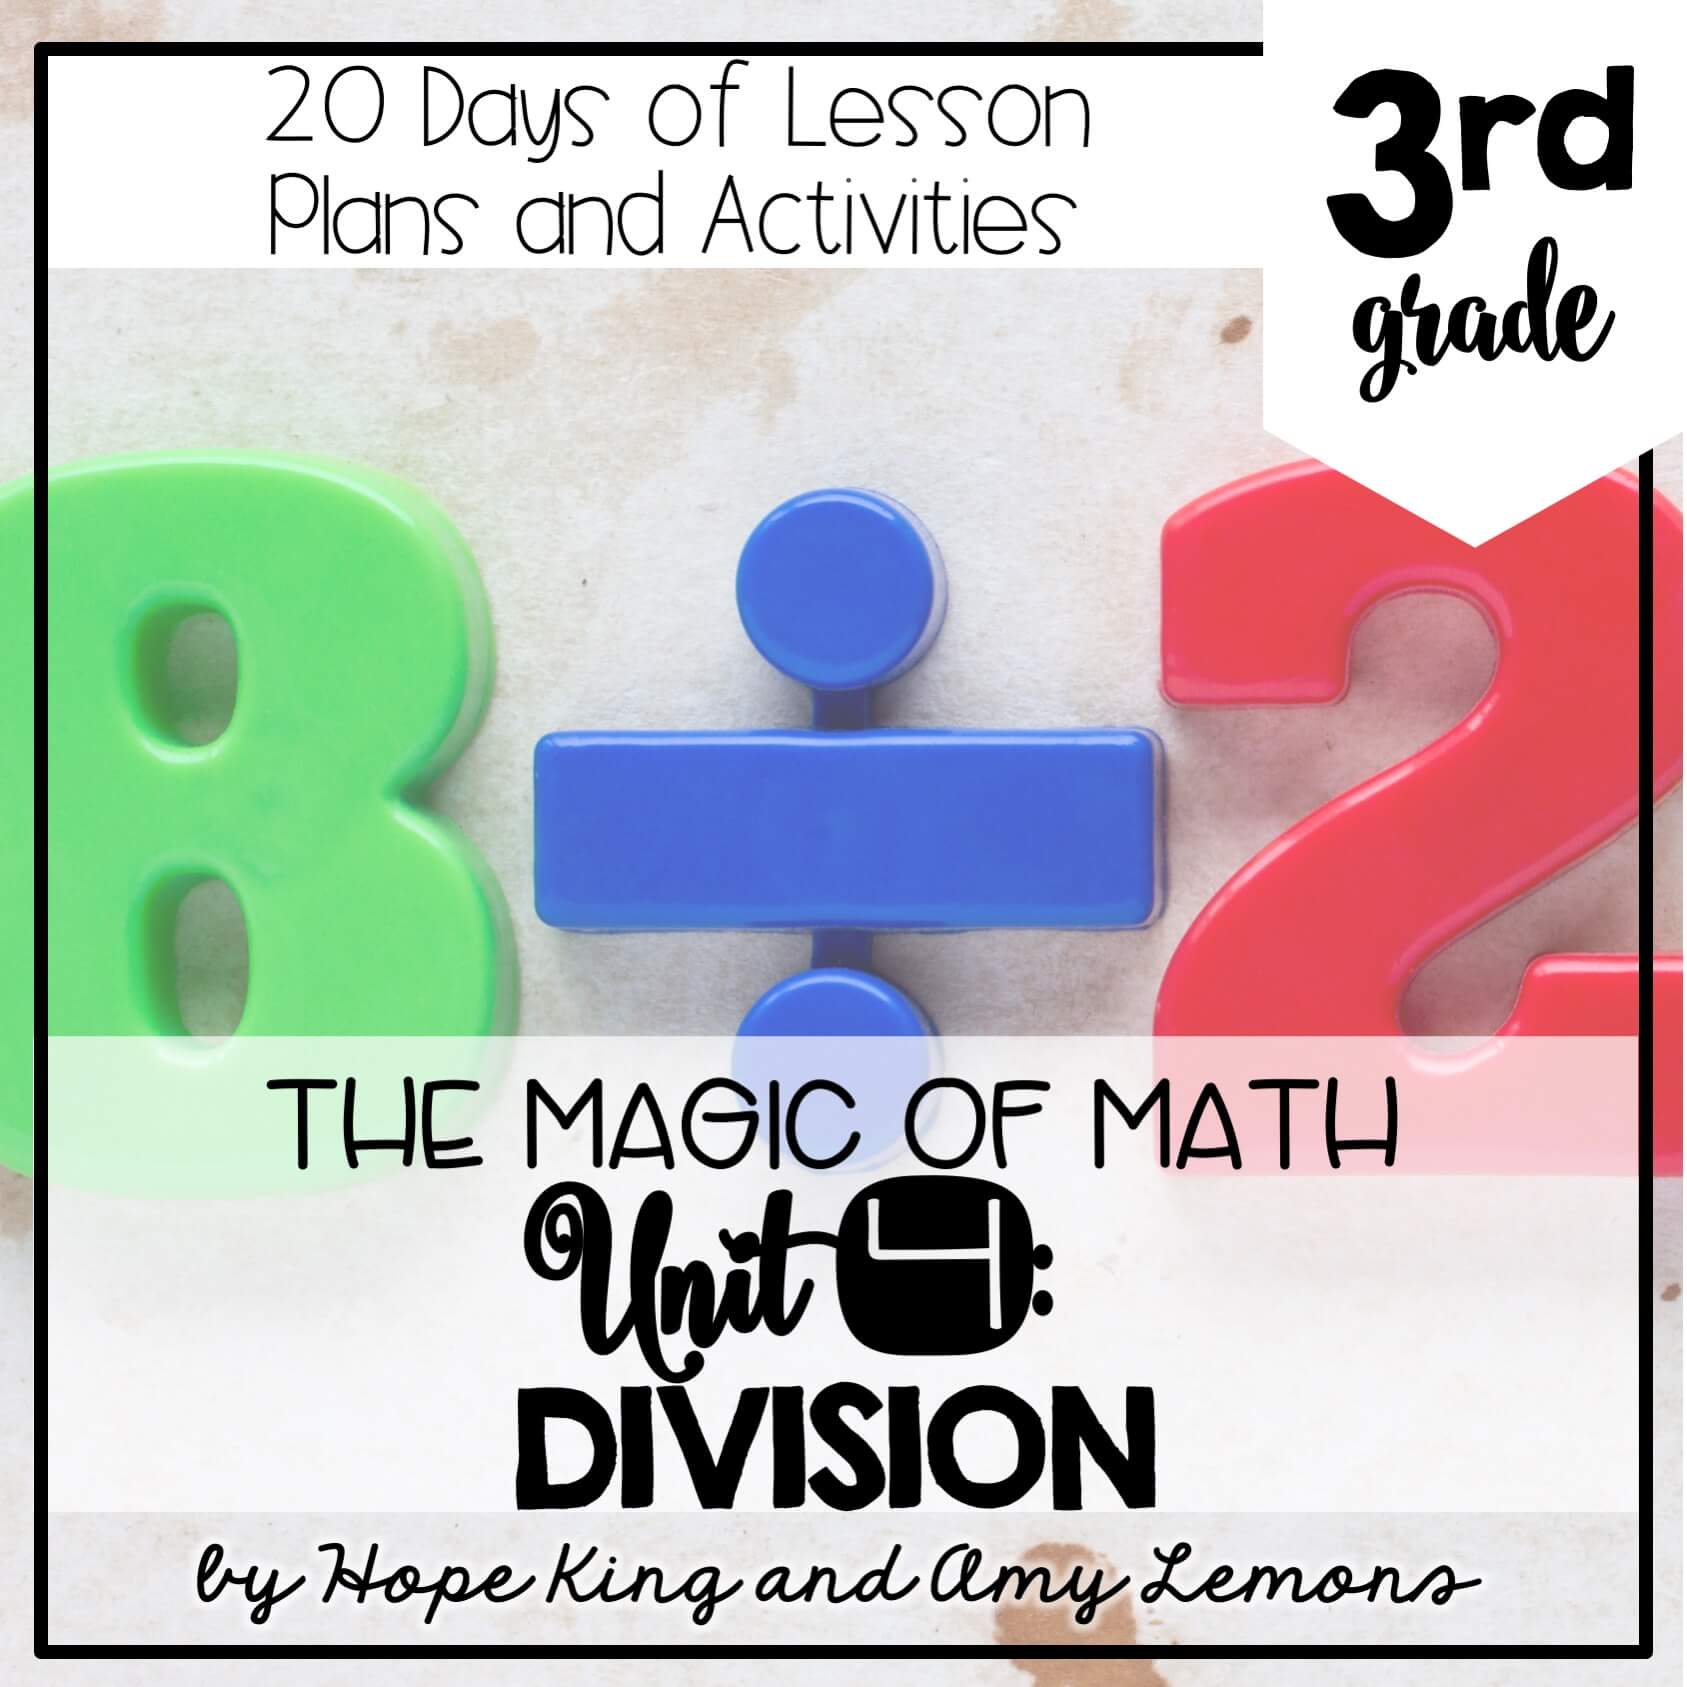 3rd Grade Magic of Math Unit 4